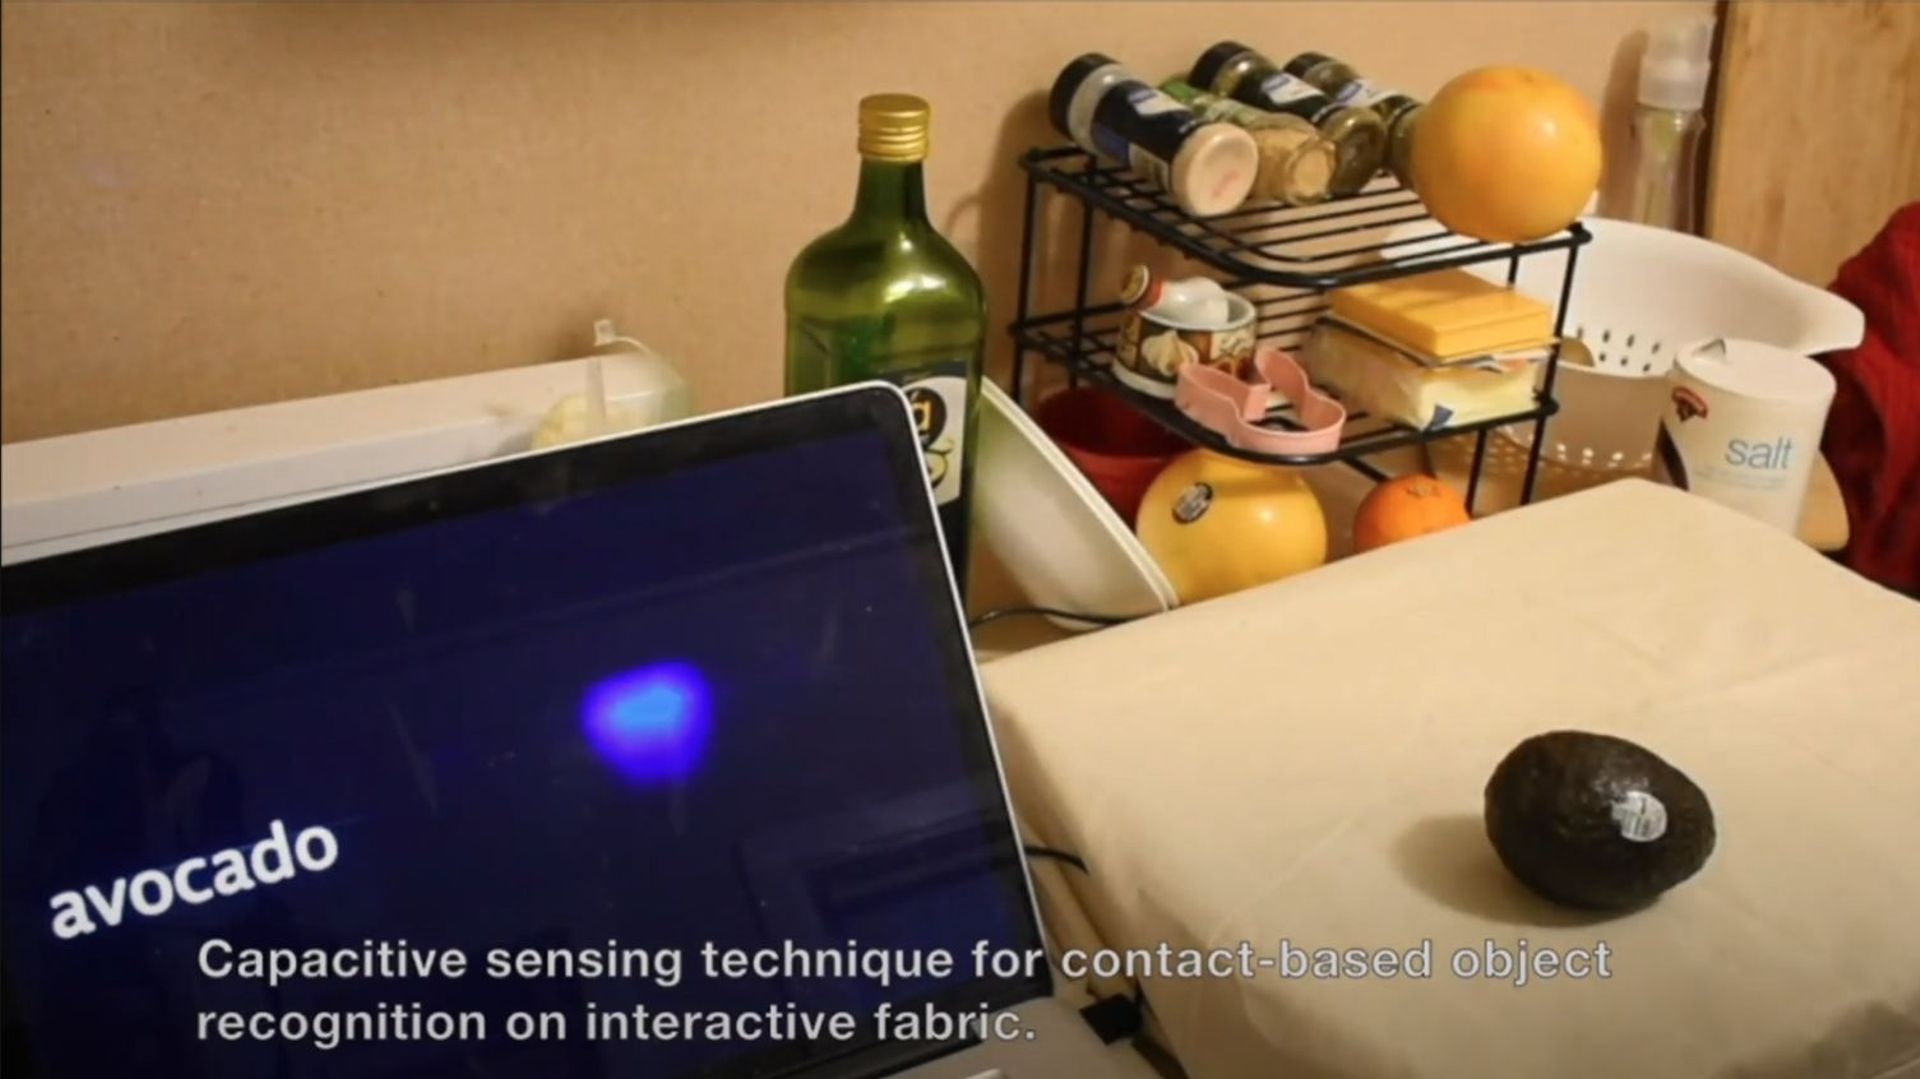 Les créateurs de la technologie Capacitivo ont mis en ligne une vidéo dans laquelle des objets et des aliments sont reconnus par le biais d'un tissu intelligent.